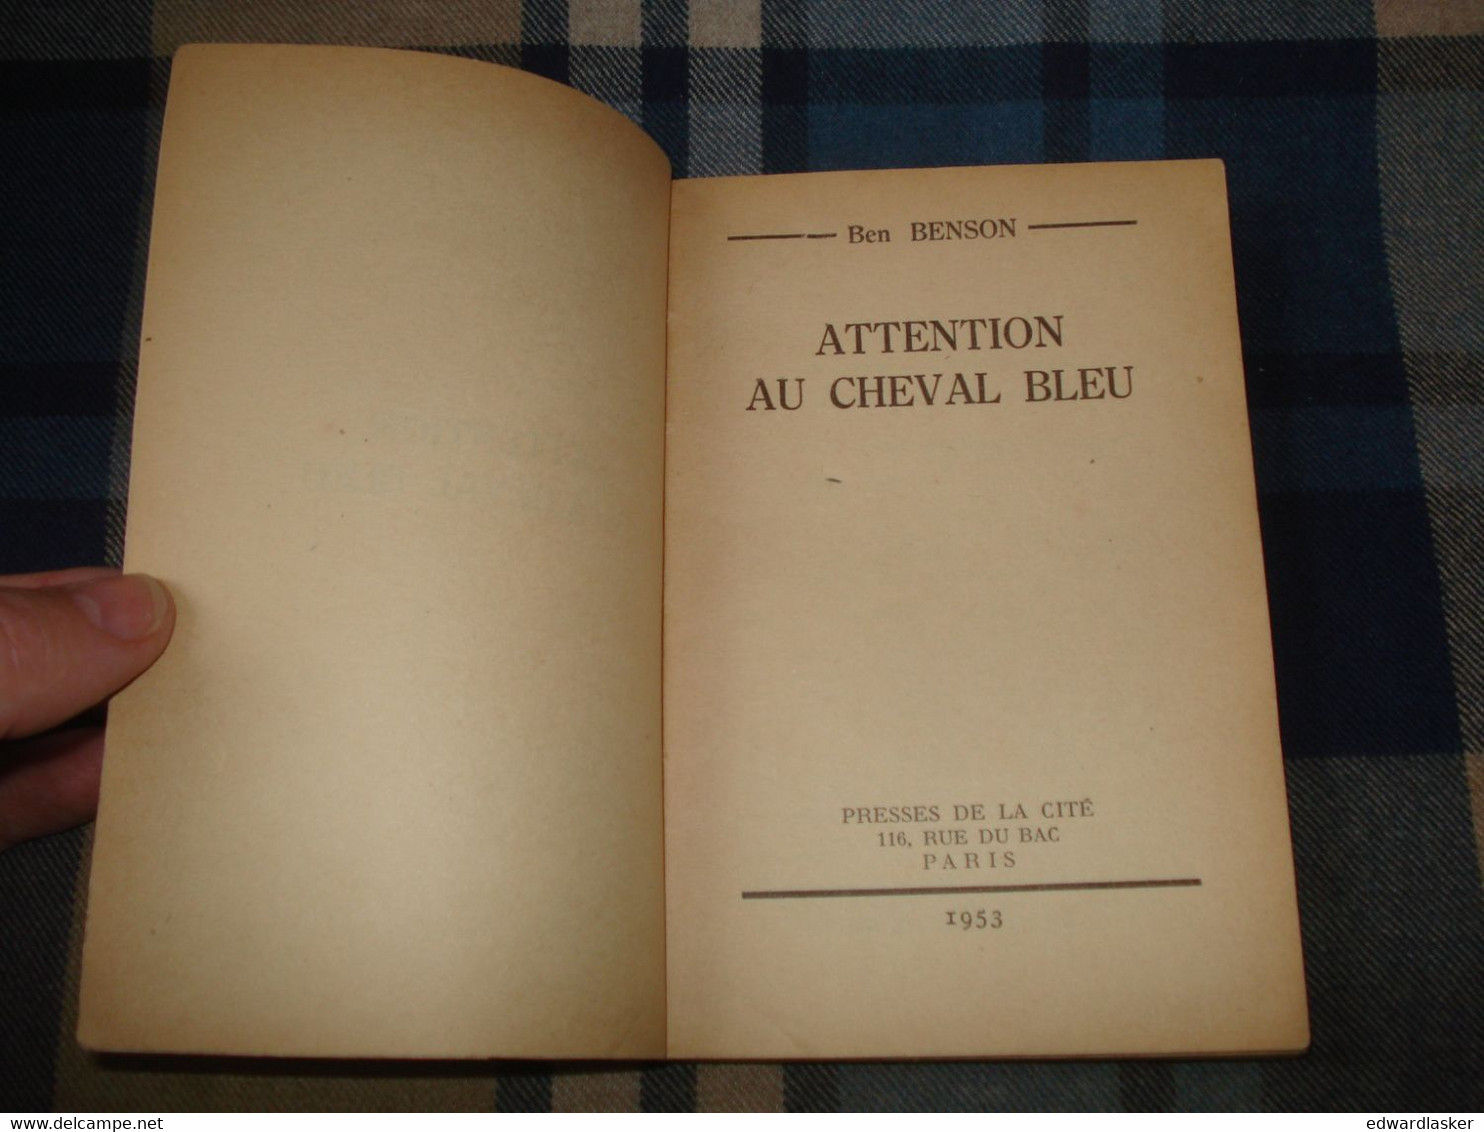 Un MYSTERE N°123 : Attention Au CHEVAL Bleu /Ben BENSON - Janvier 1953 - Presses De La Cité